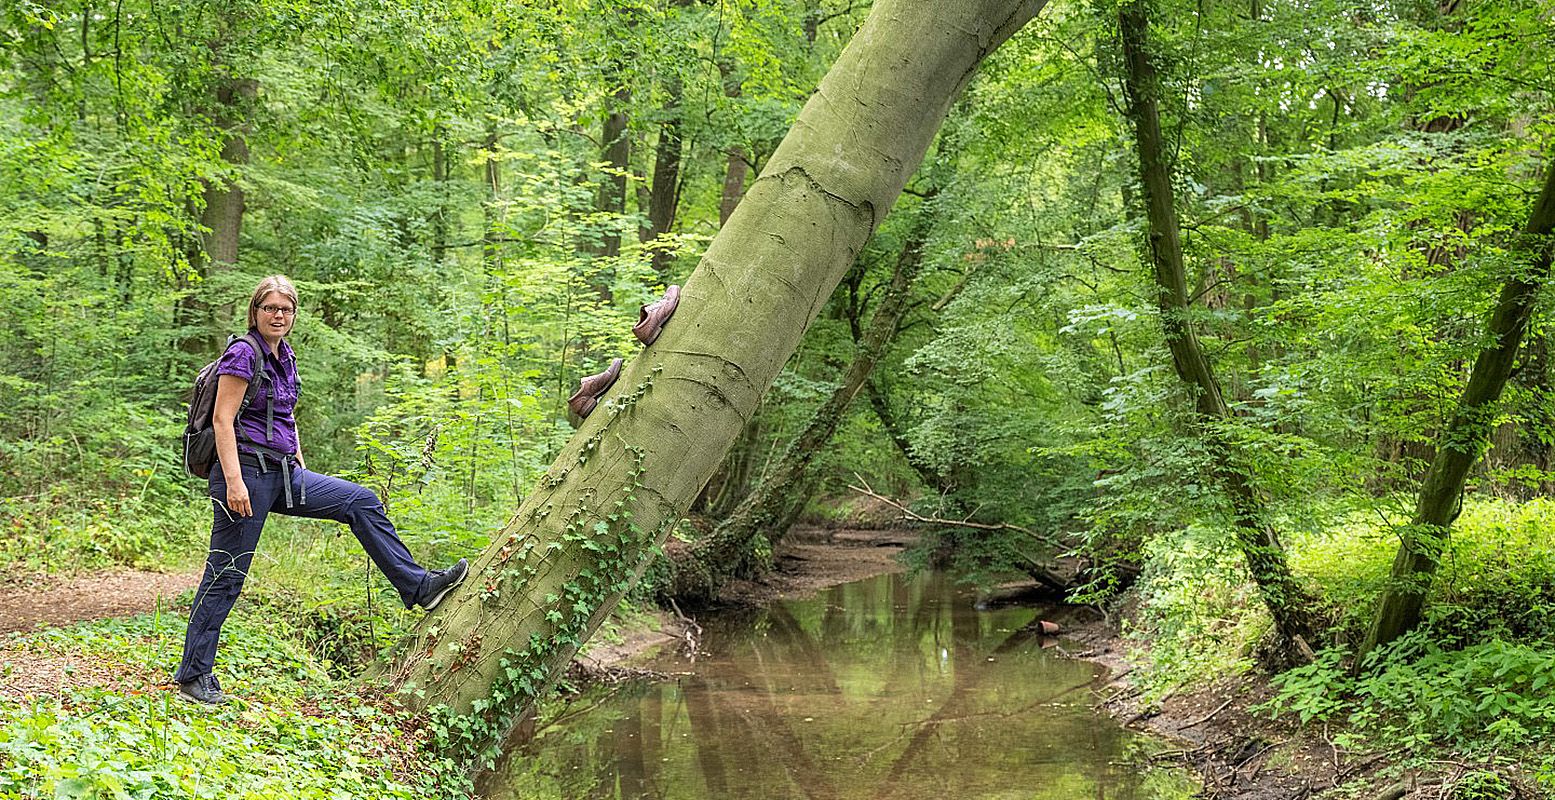 Ontdek met wandelboswachter Ellen de meer dan honderd jaar oude Gelderlandroute. Foto: Bob Luijks